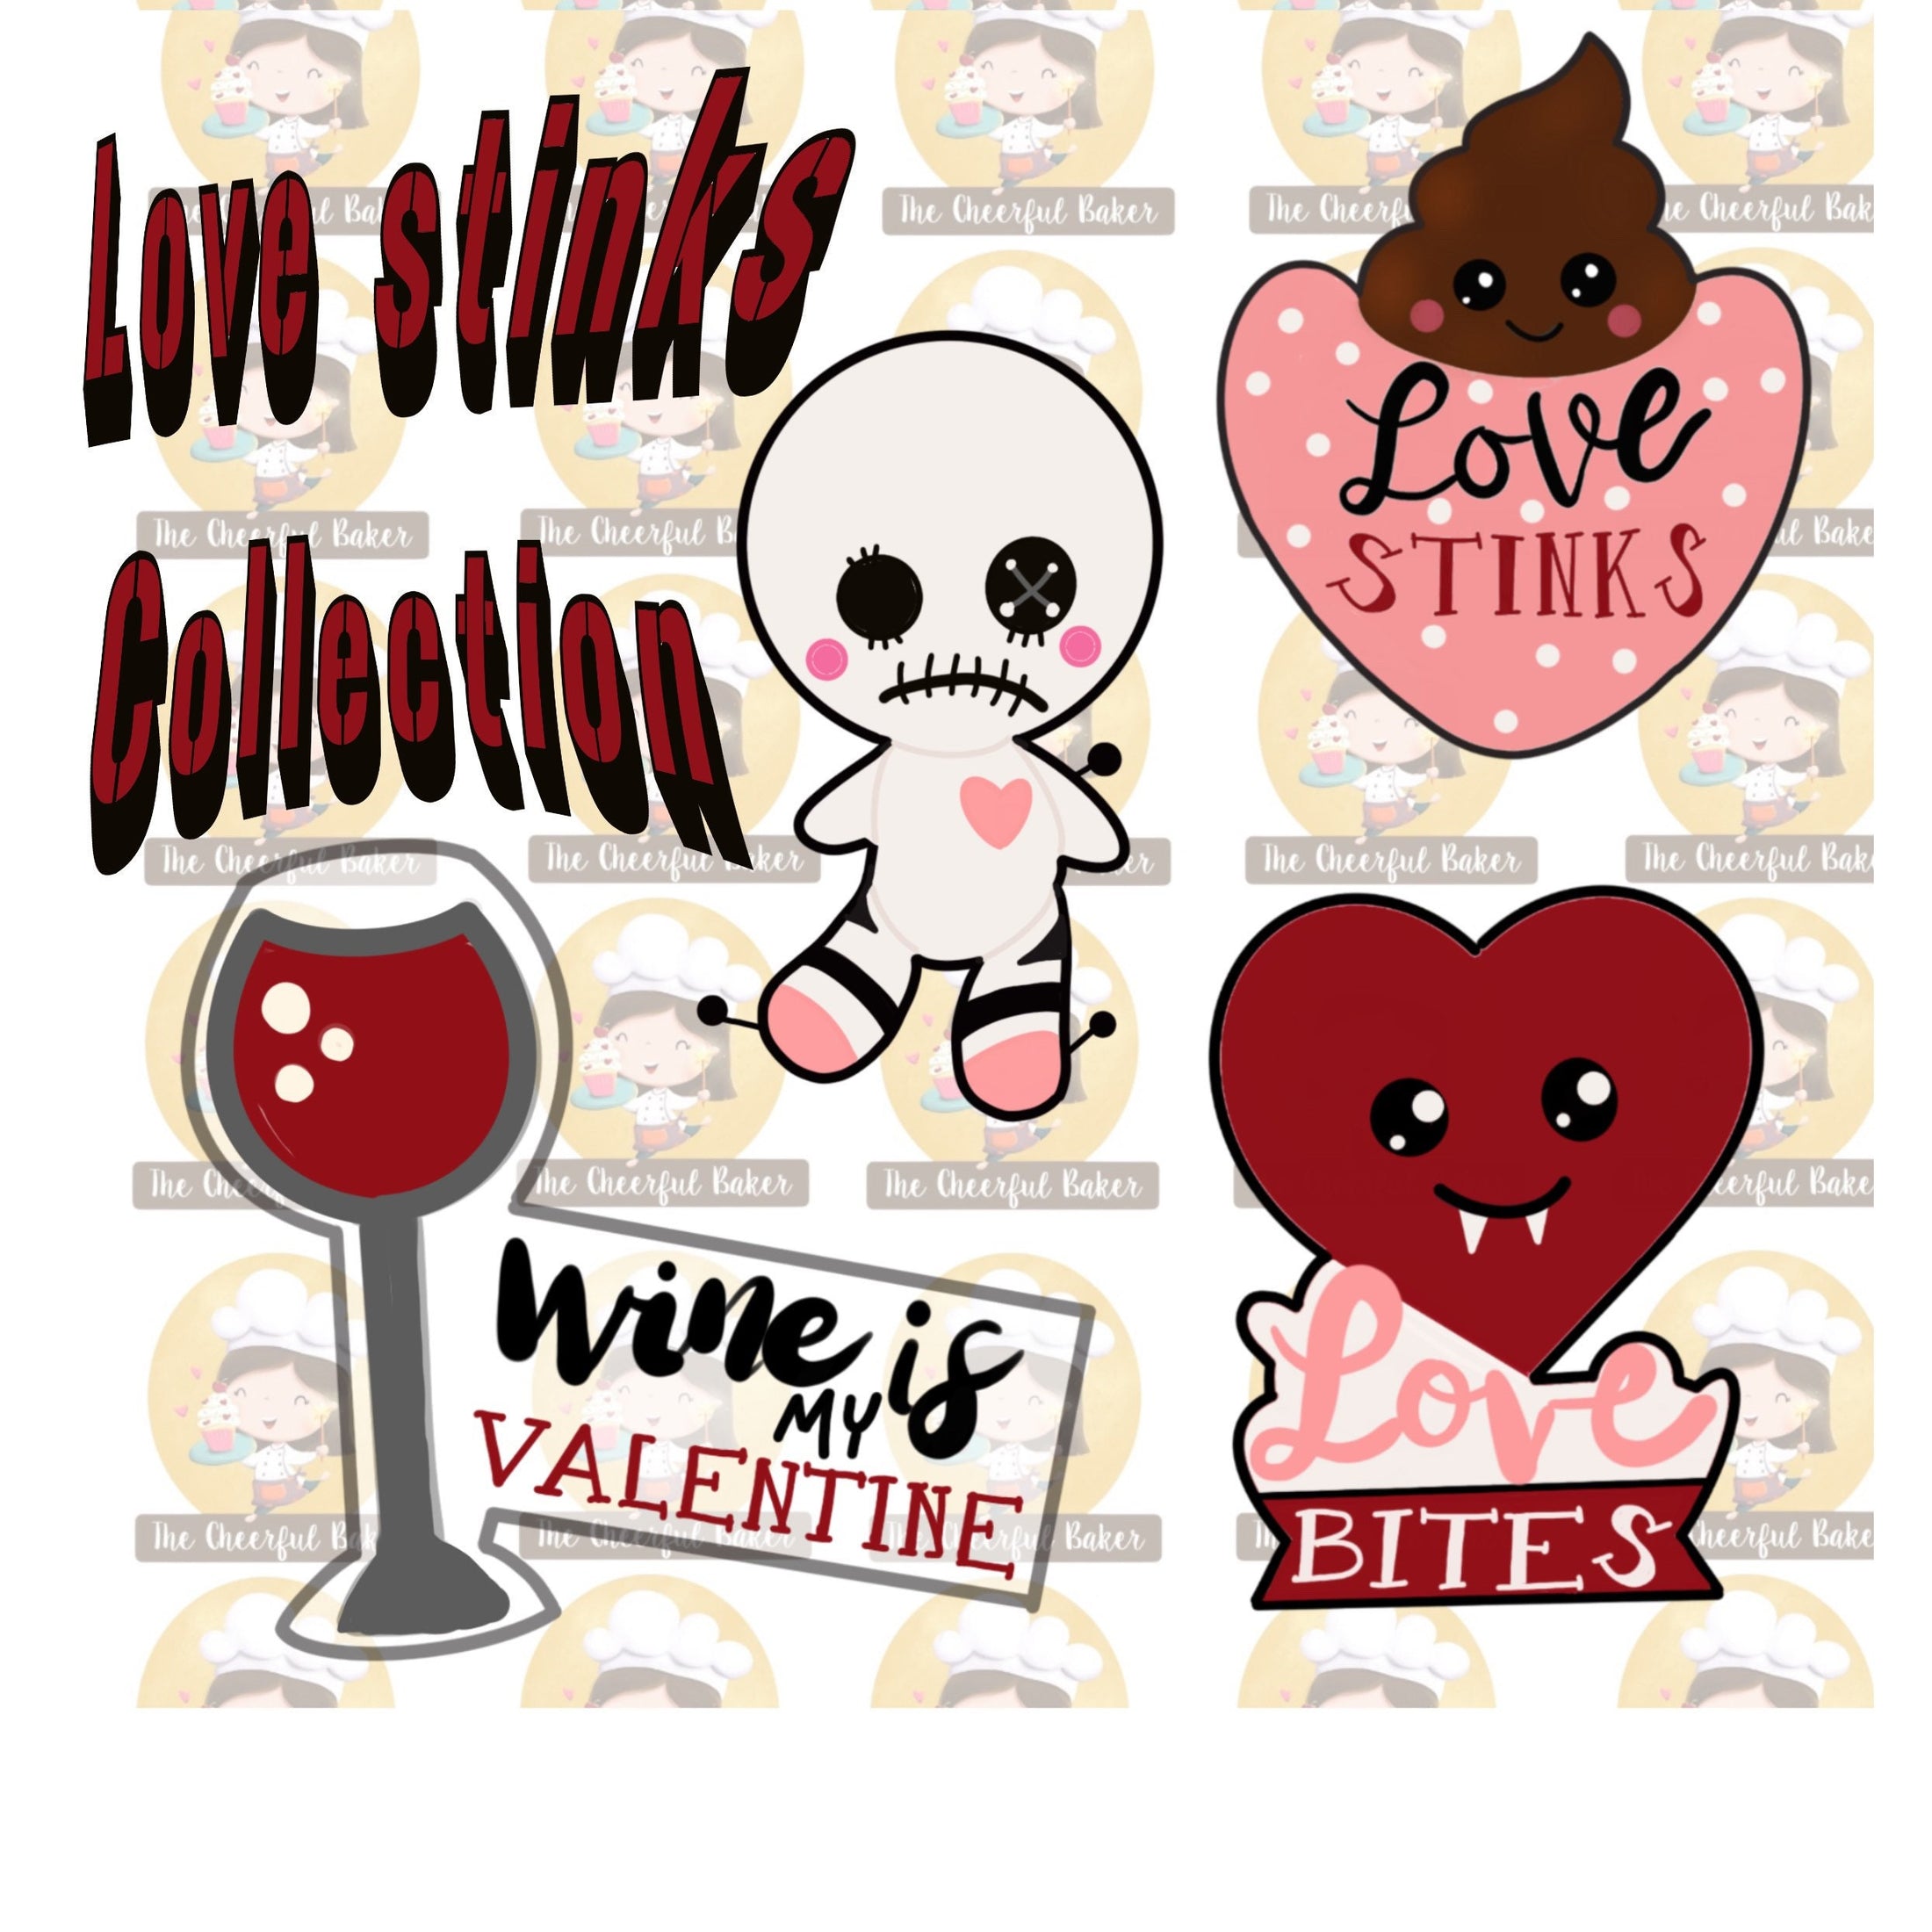 Love stink Valentine cookie cutter